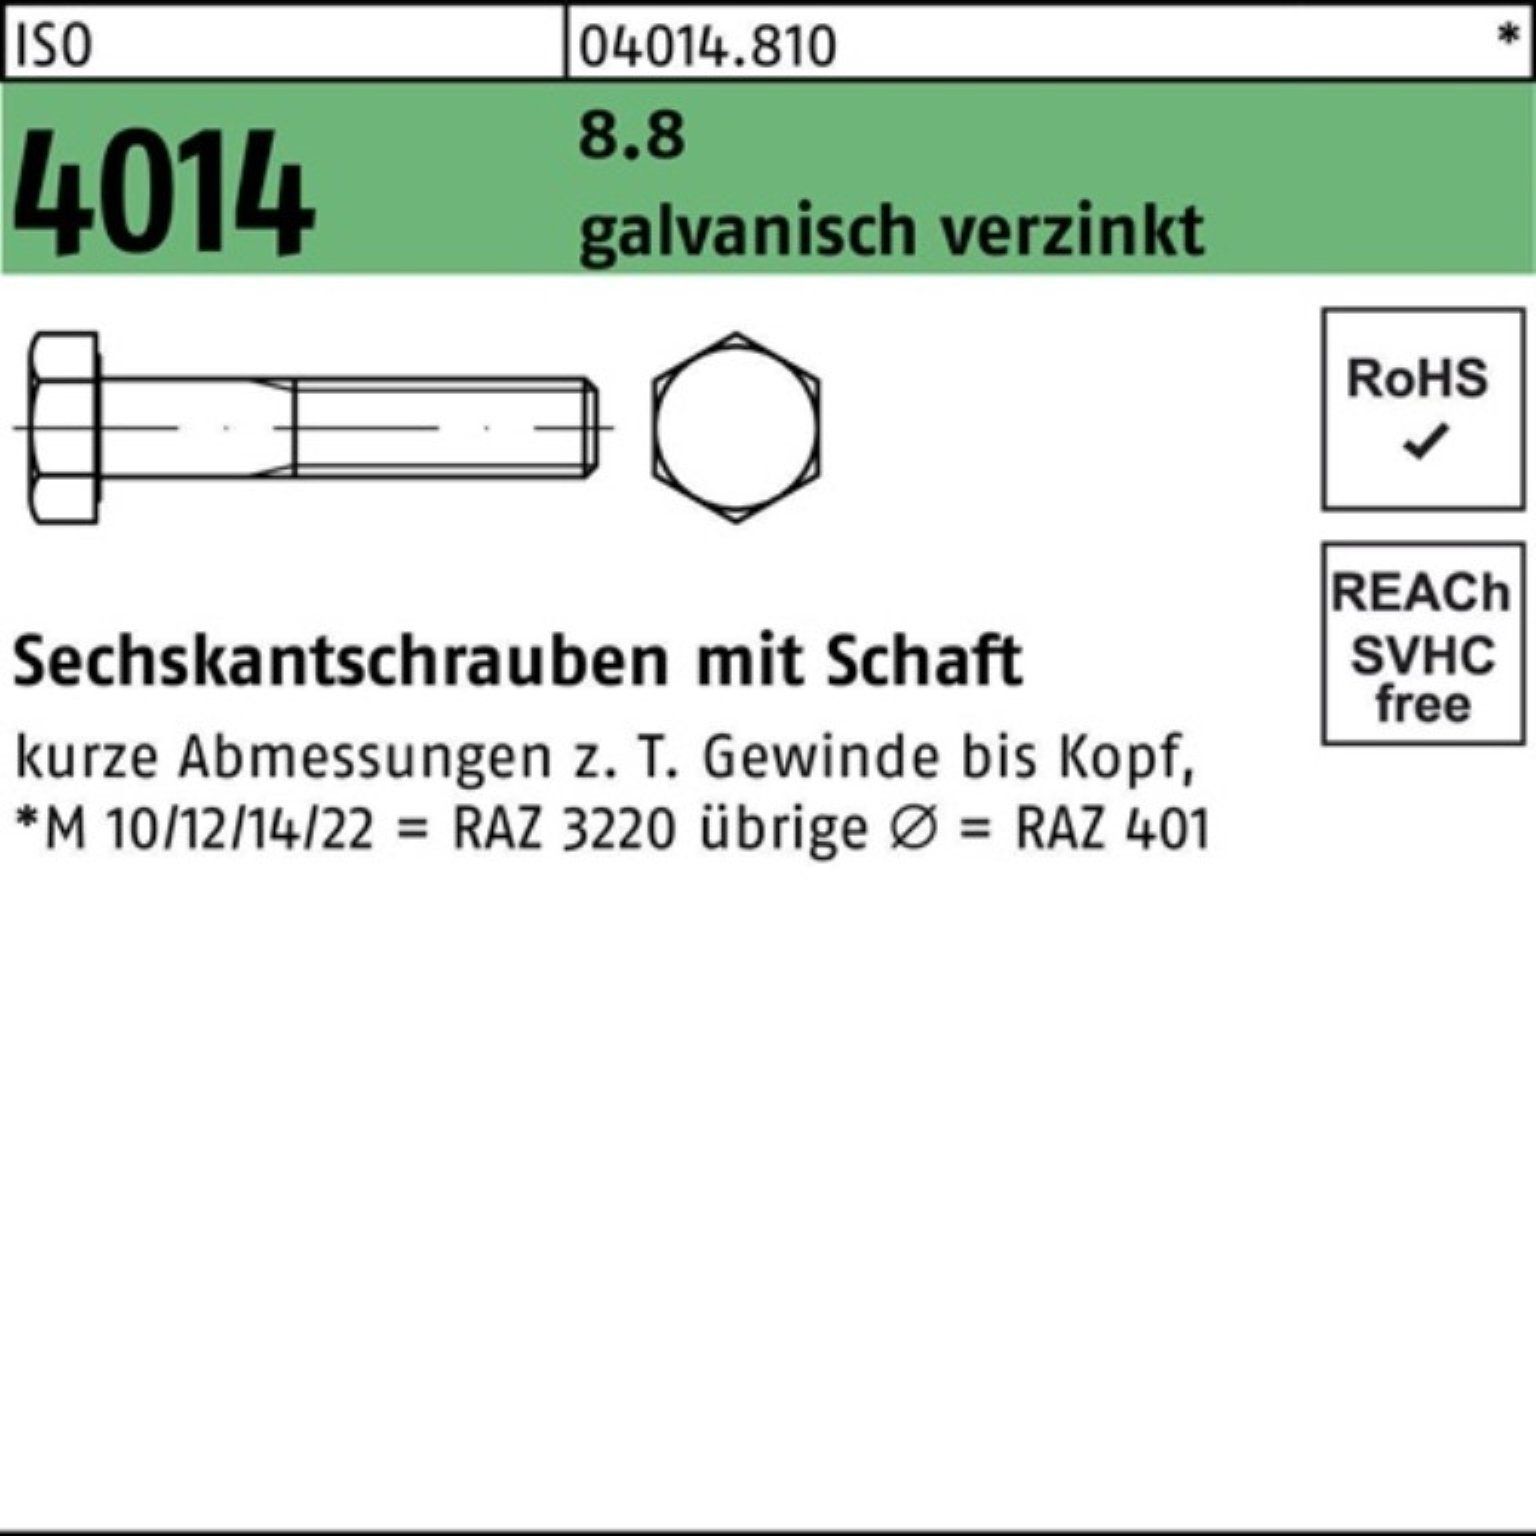 Bufab Sechskantschraube 100er ISO 1 8.8 Sechskantschraube galv.verz. 100 Schaft Pack M22x 4014